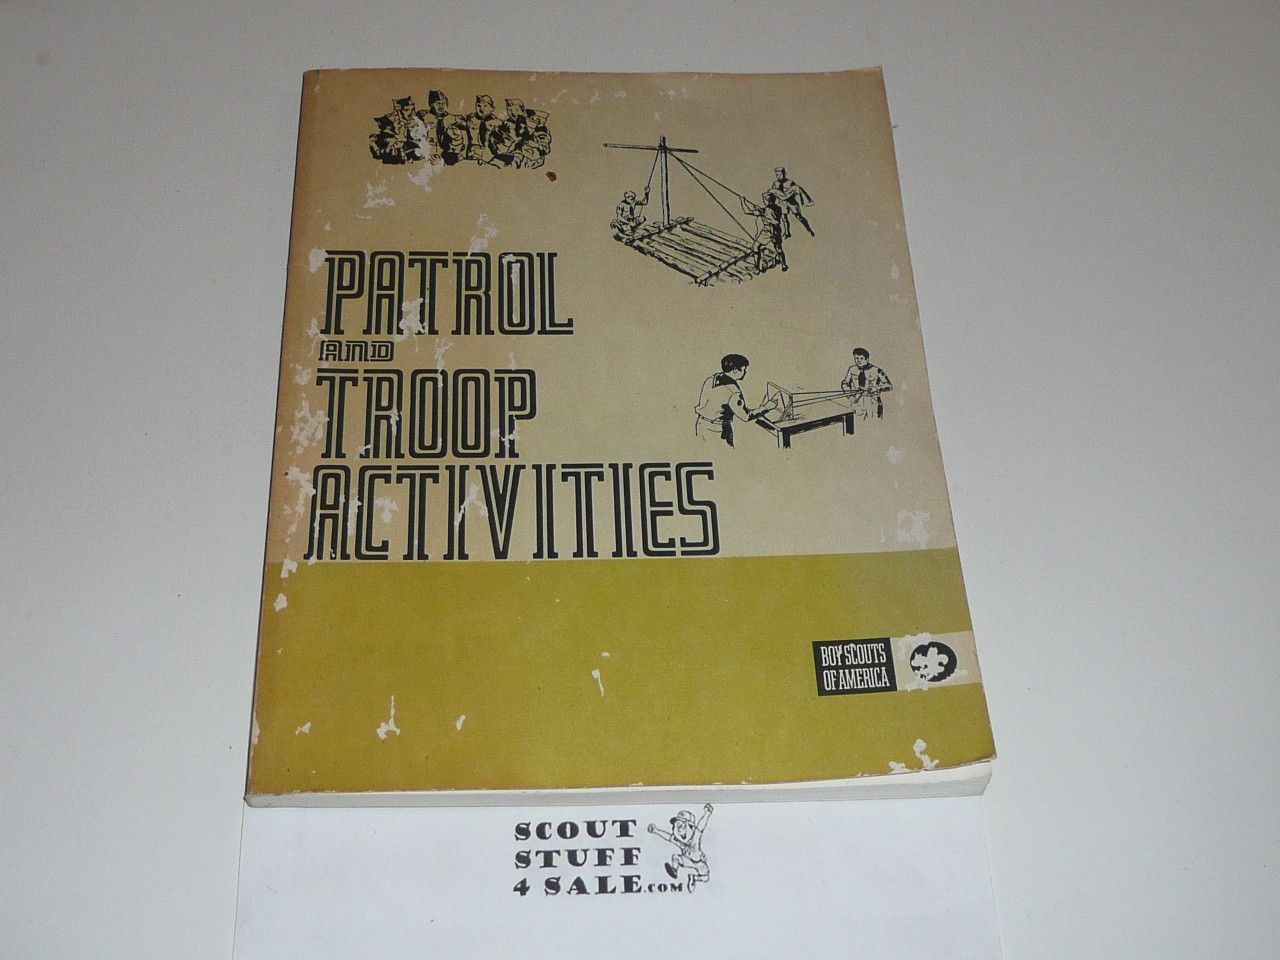 Patrol and Troop Activities Book, 1980's Printing